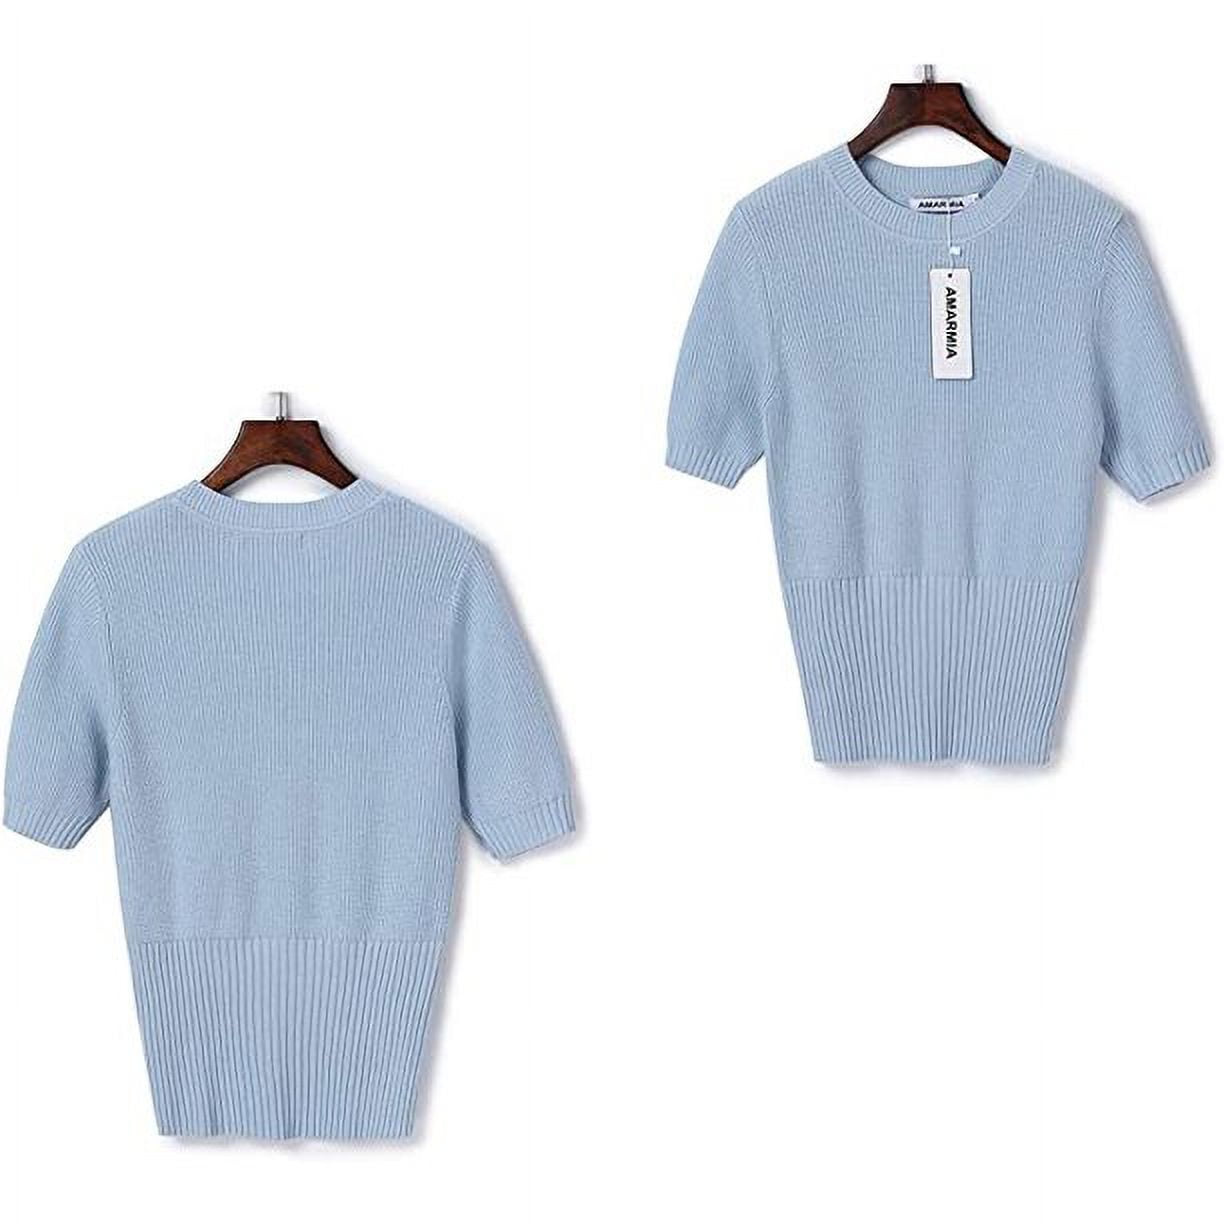 Lularoe Light Heathered Blue Ribbed Short Sleeve Open Face Cardigan Sweater